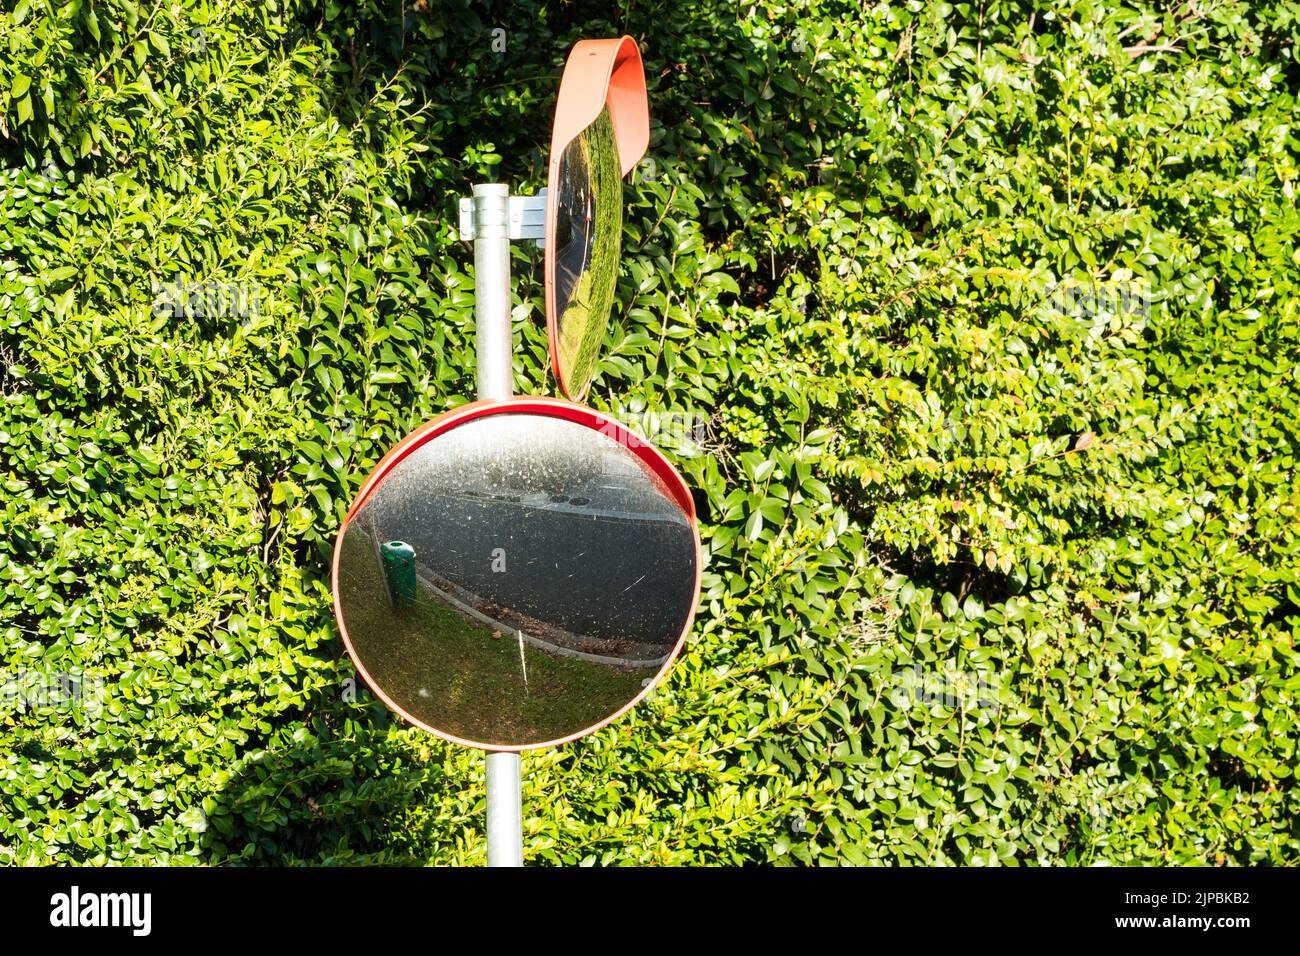 specchio convesso rotondo esterno o specchio stradale o specchio stradale ad alta visibilità montato su un palo su una strada o su una strada per la copertura dei punti ciechi Foto Stock